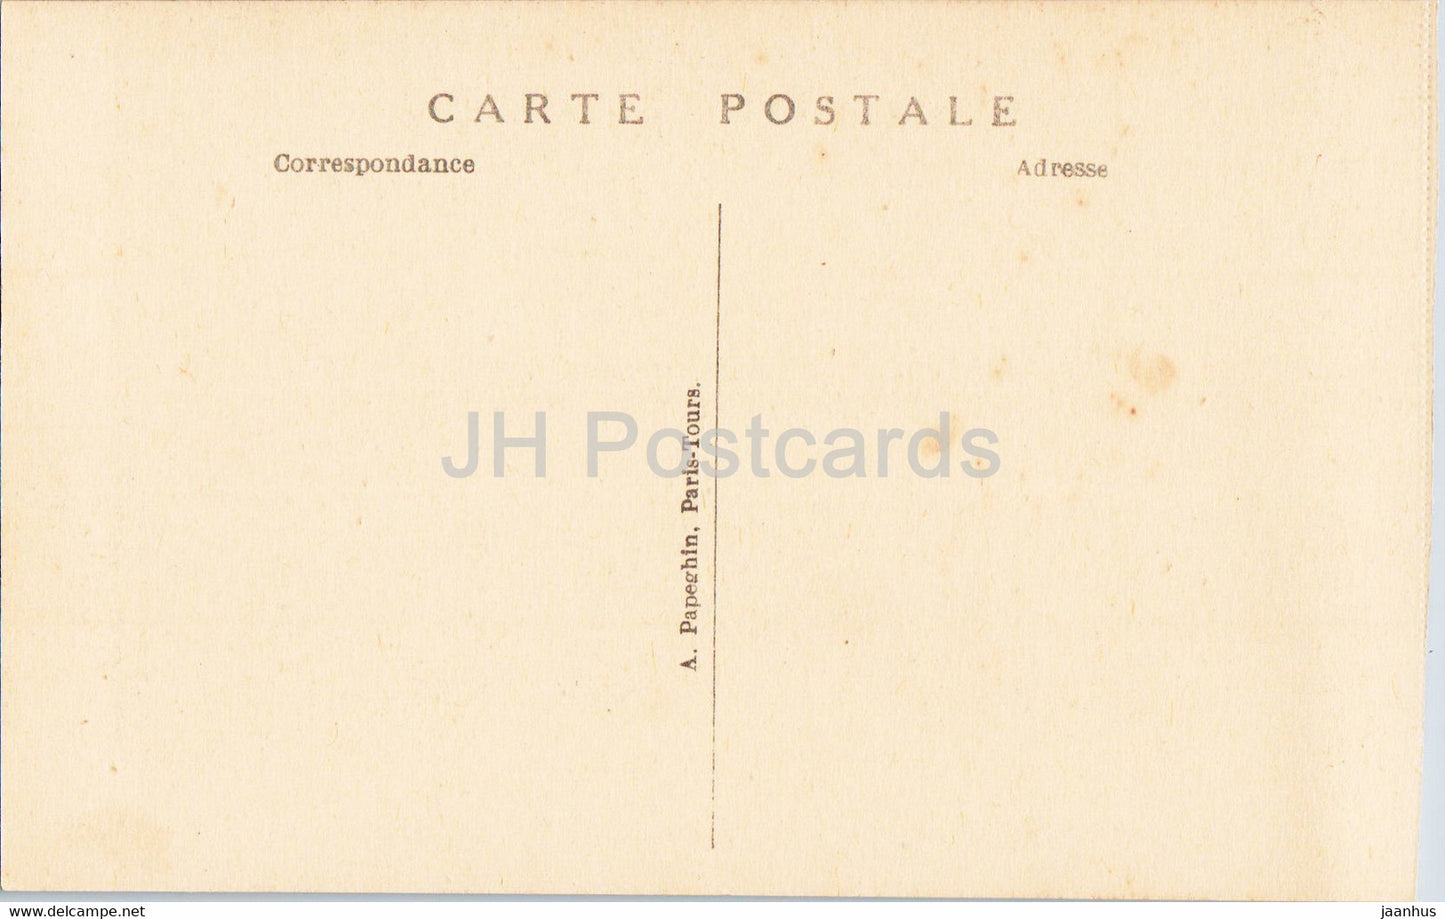 Versailles - Le Chateau - La Galerie des Batailles - 51 - Battle Gallery - carte postale ancienne - France - inutilisée